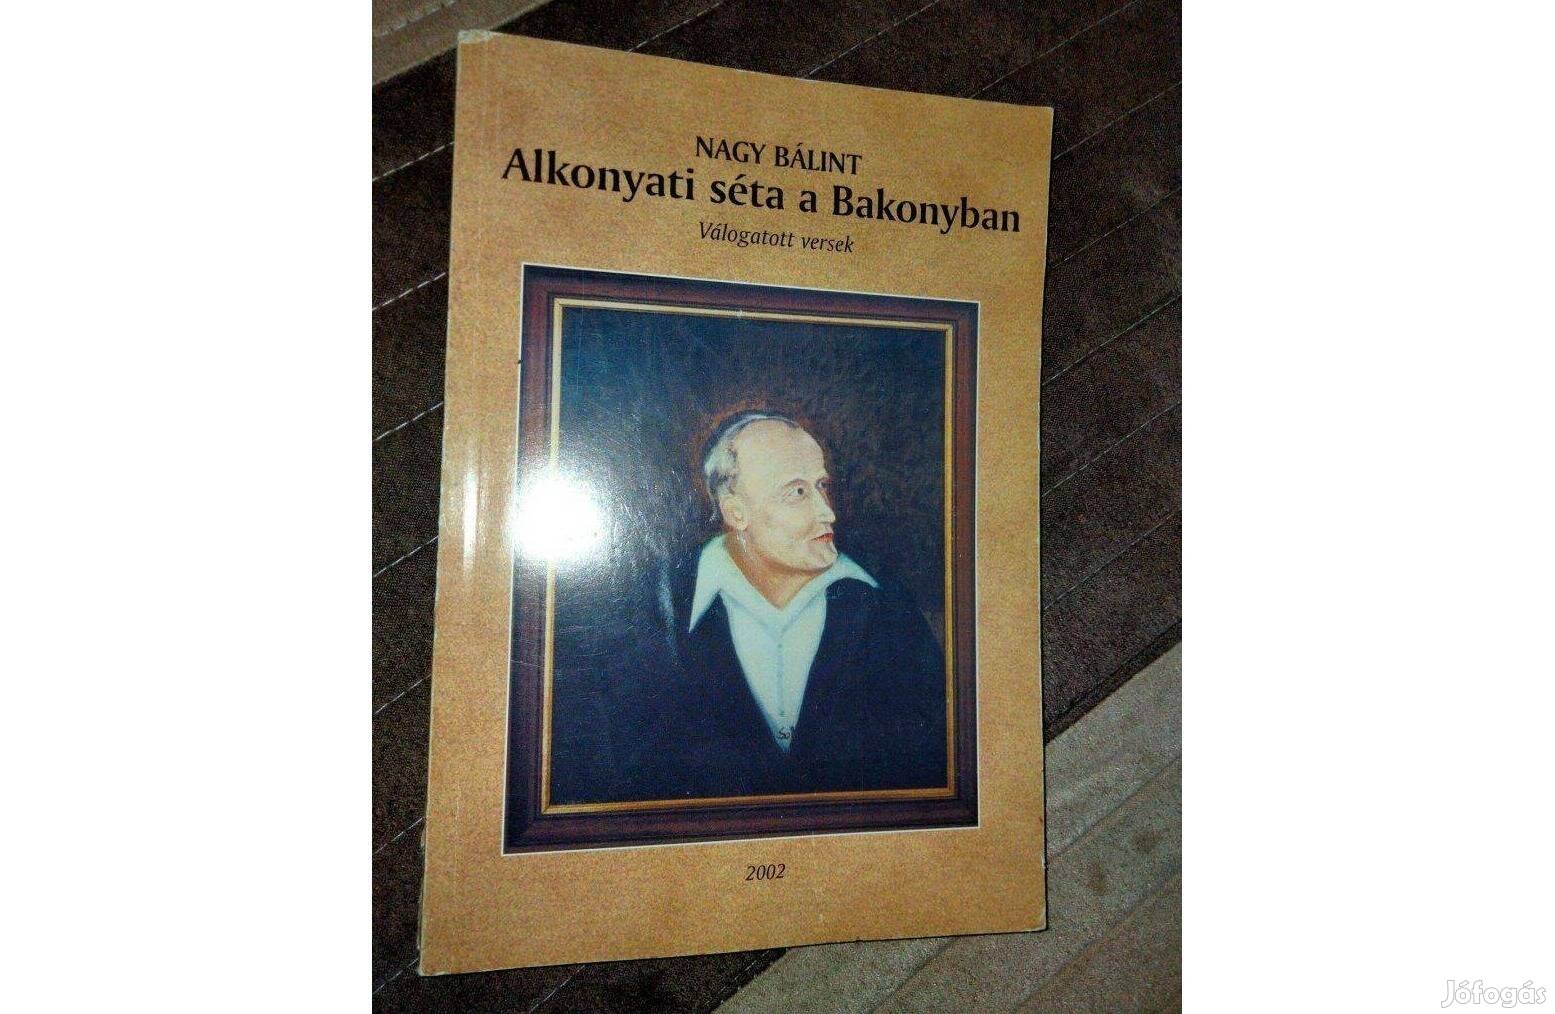 Dr. Nagy Bálint : Alkonyati séta a Bakonyban